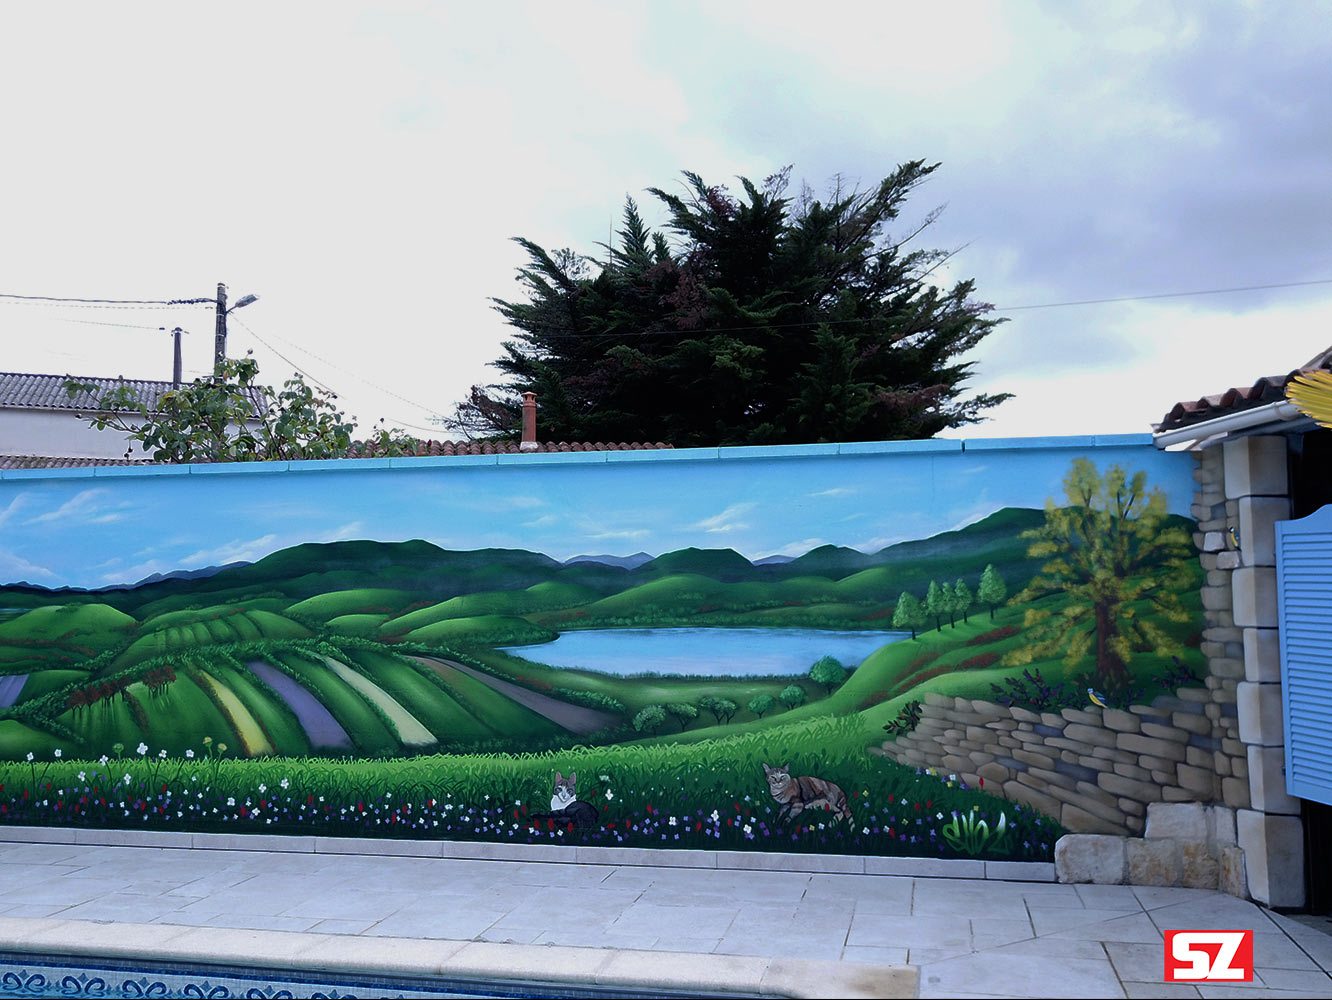 Graffiti-peinture-Suoz-decoration-chat-oiseaux-nature-paysage-Saintes-Customsz-la-rochelle-france-street-art